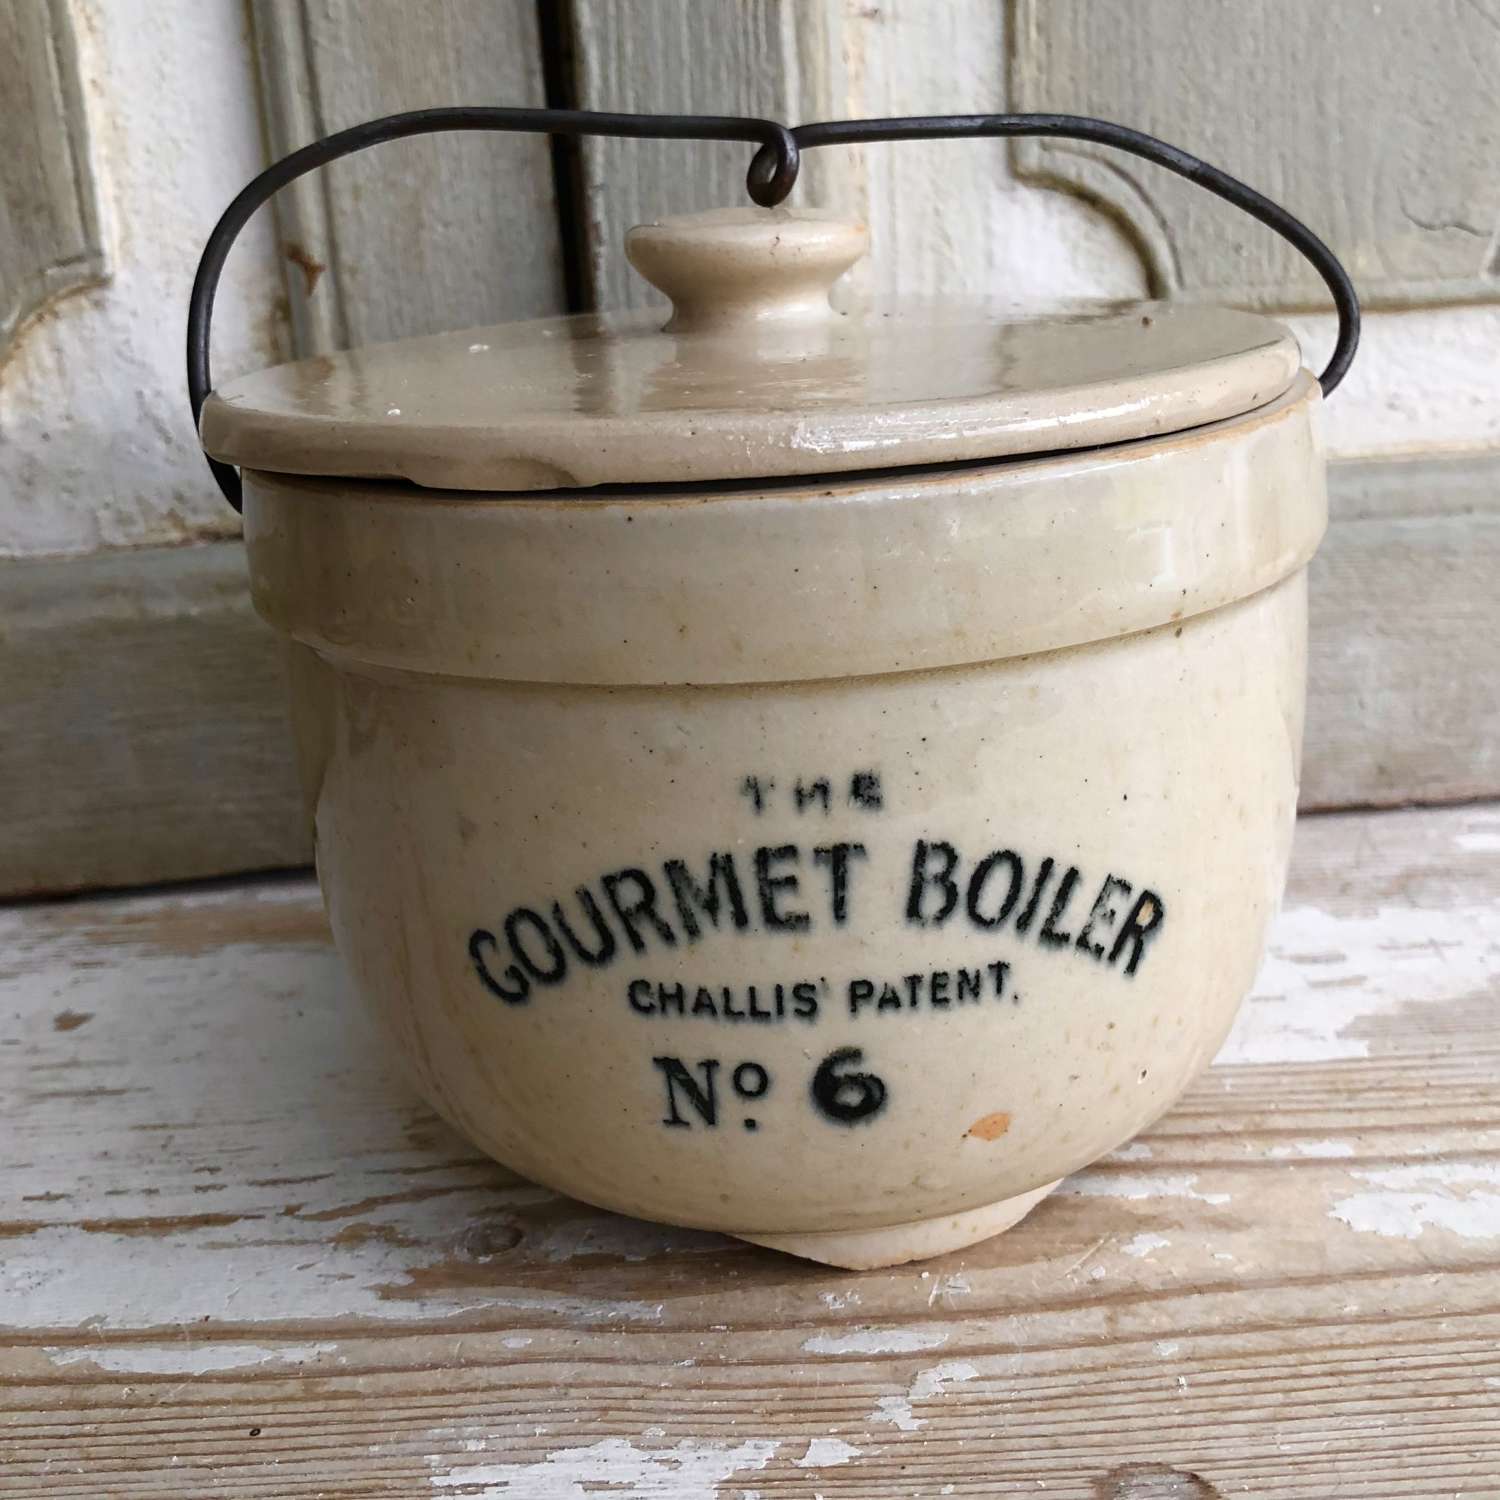 The Gourmet Boiler No. 6